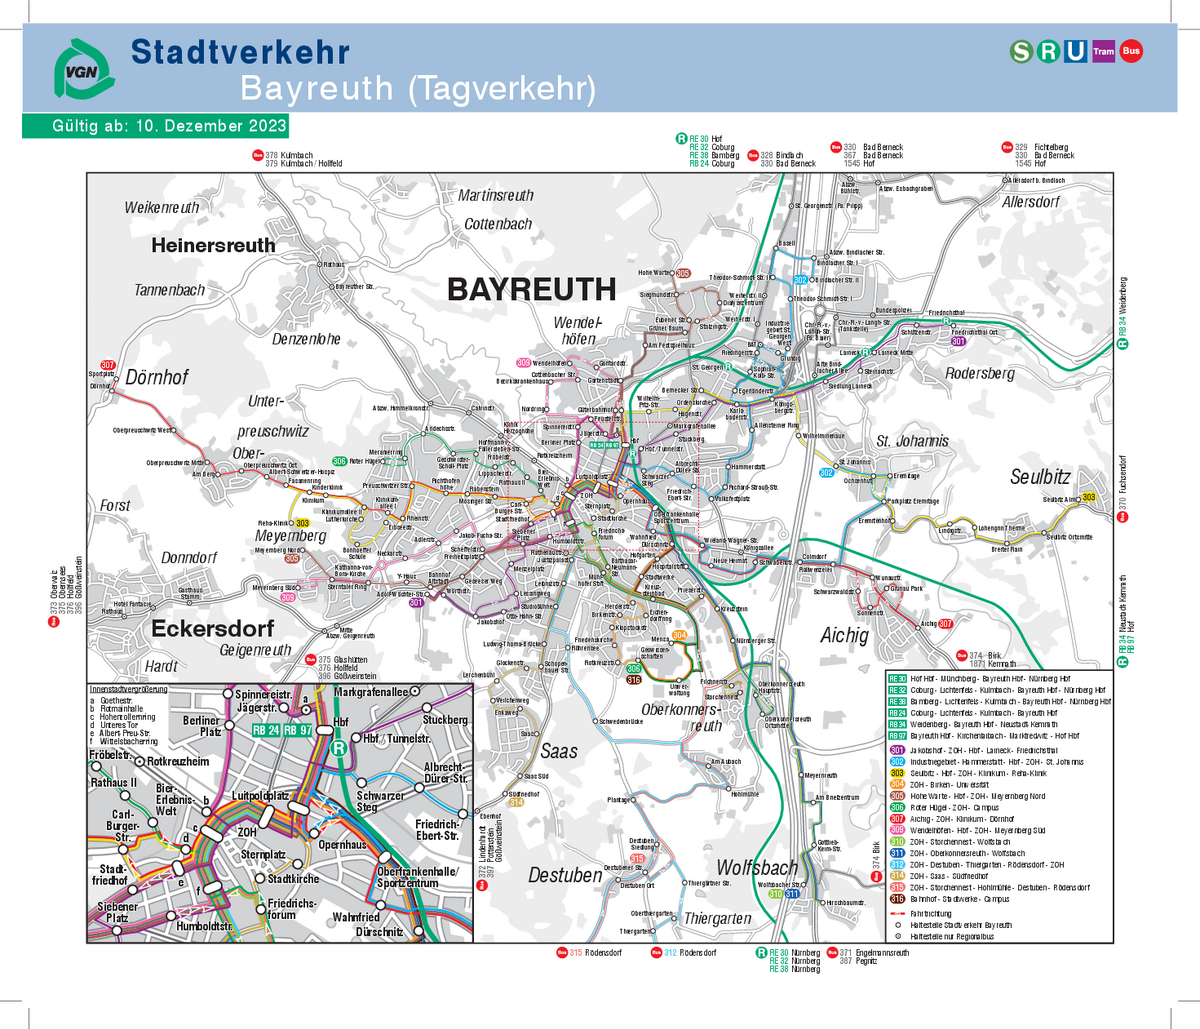 Stadtverkehr Bayreuth (Tagverkehr)